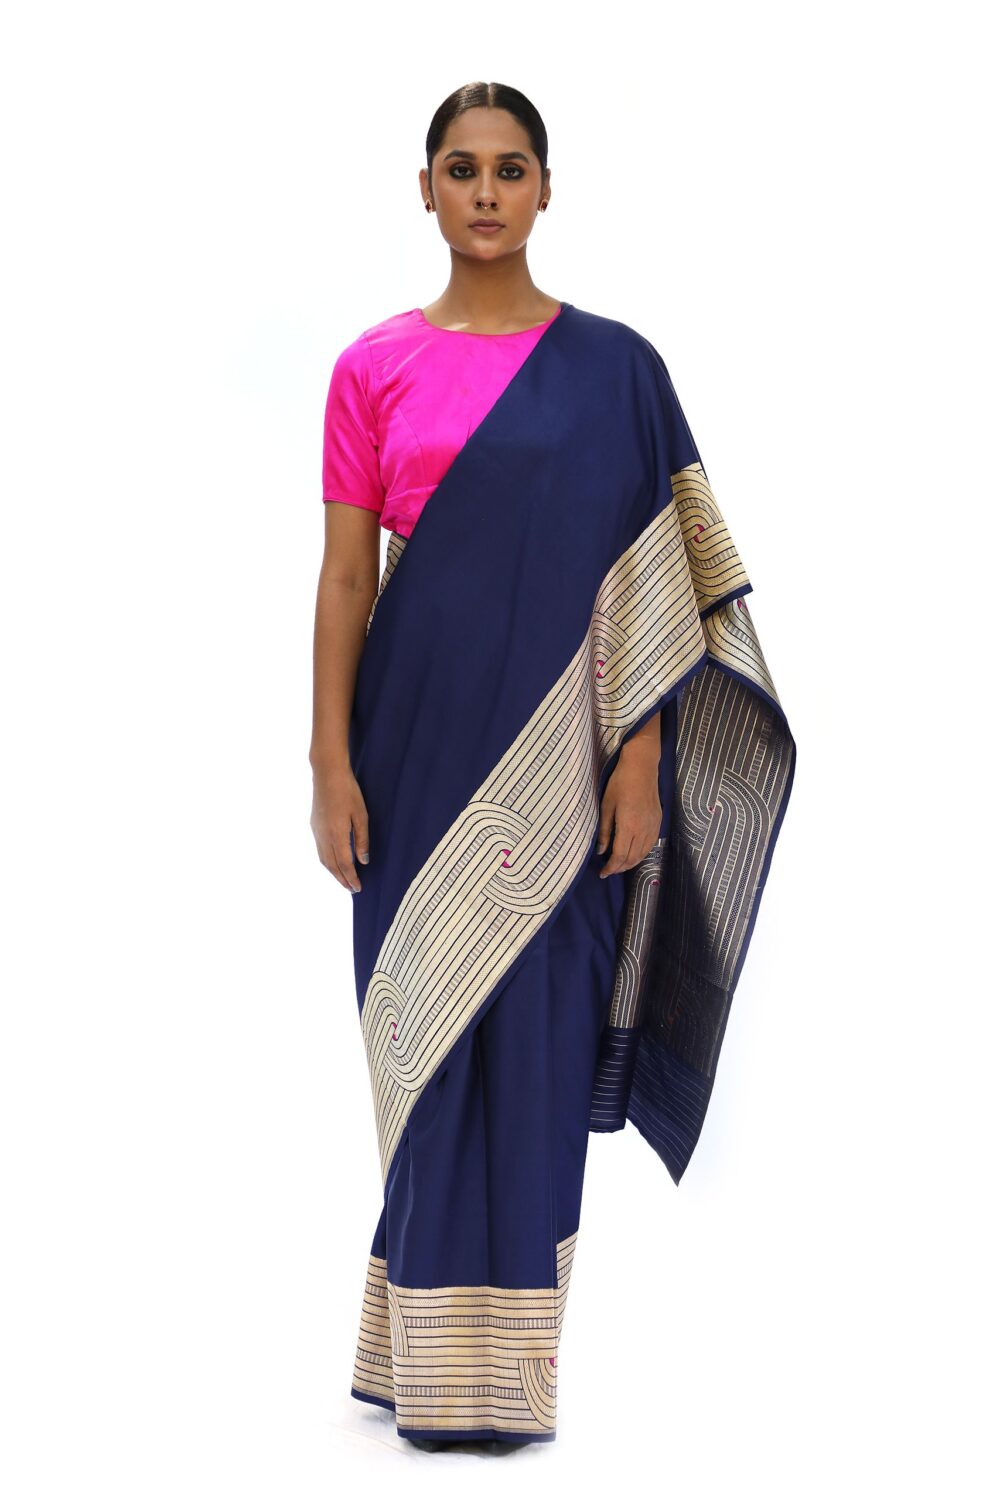 Royal blue katan silk saree